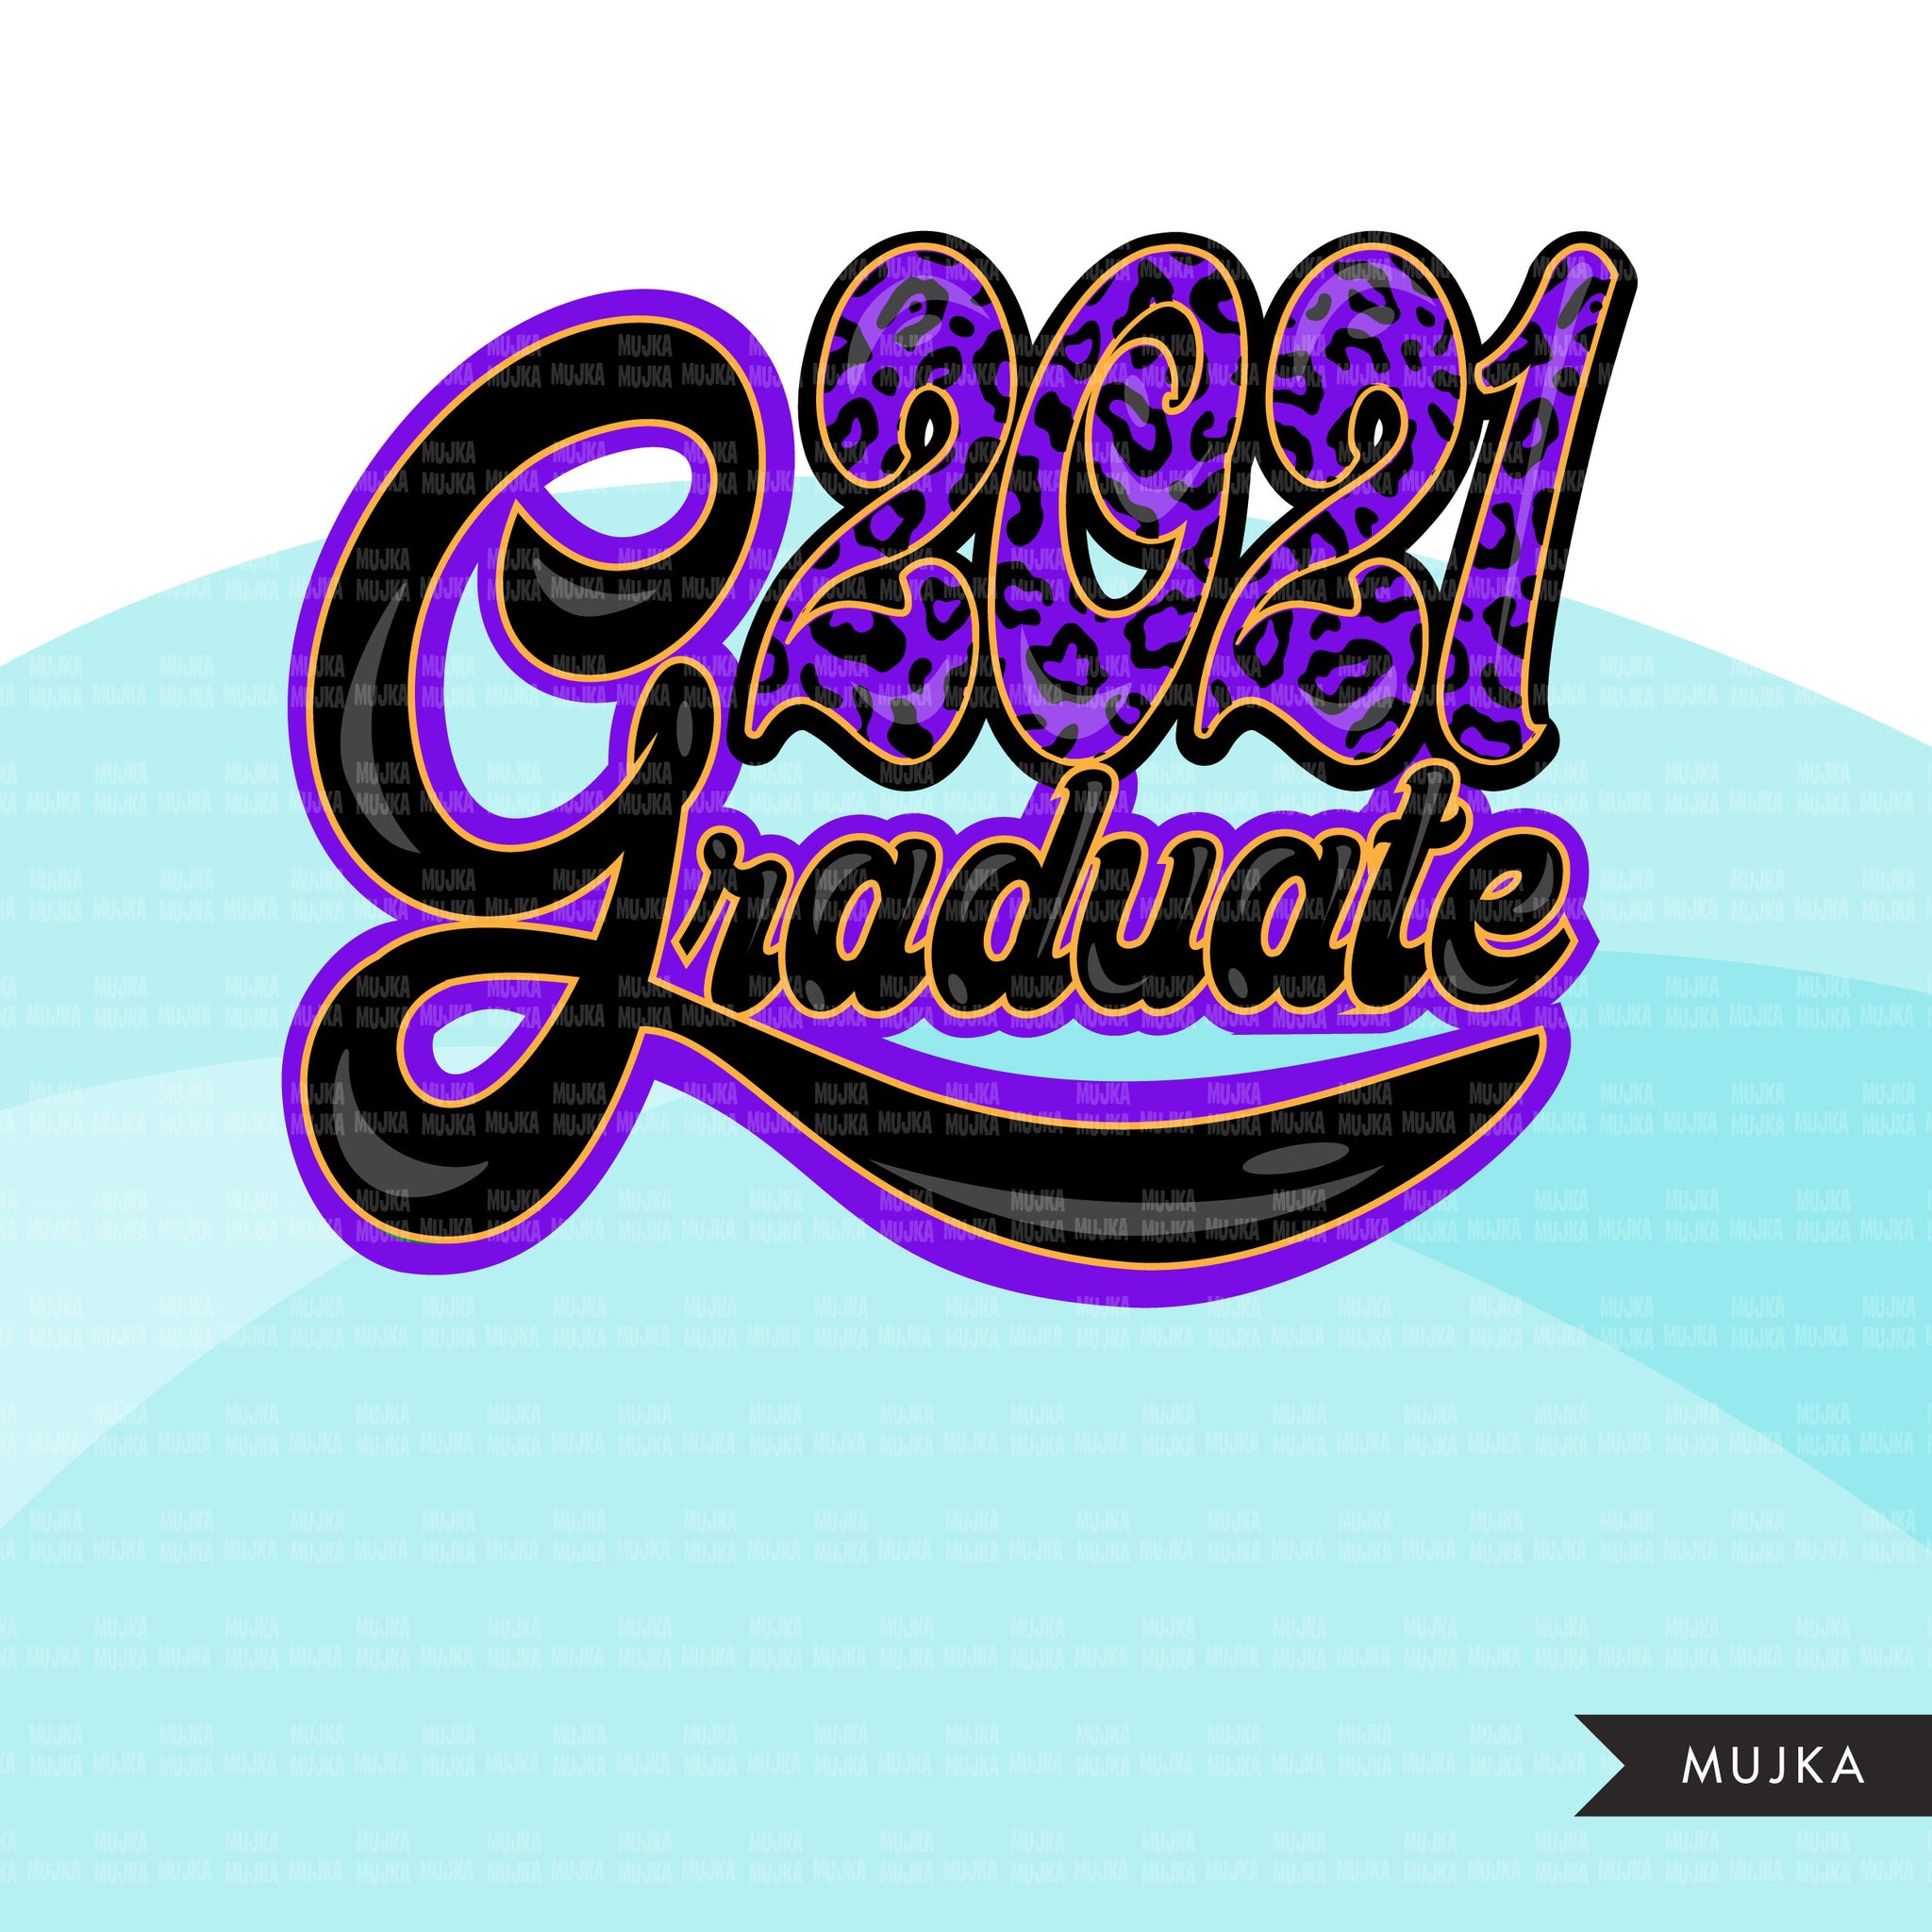 Download Grad Clipart Graduation 2021 Png Got Schooled Sublimation Designs Di Mujka Cliparts